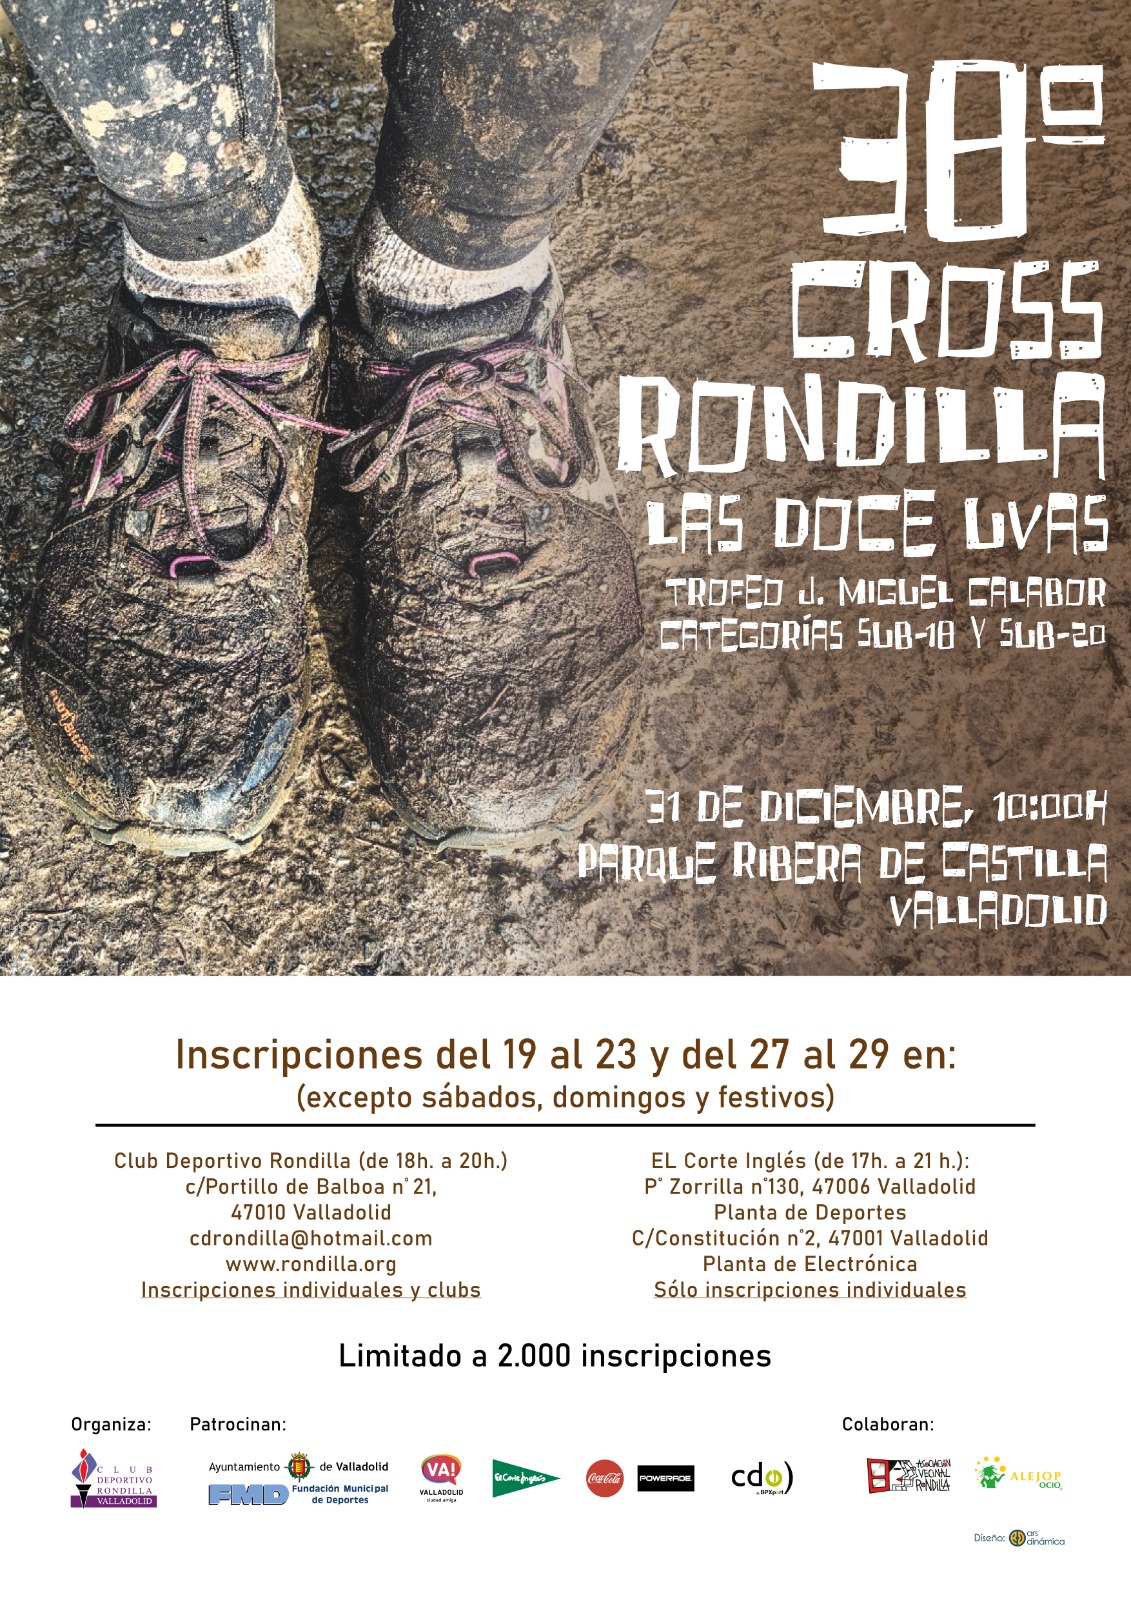 Foto del 38 Cross La Rondilla "Las 12 Uvas"